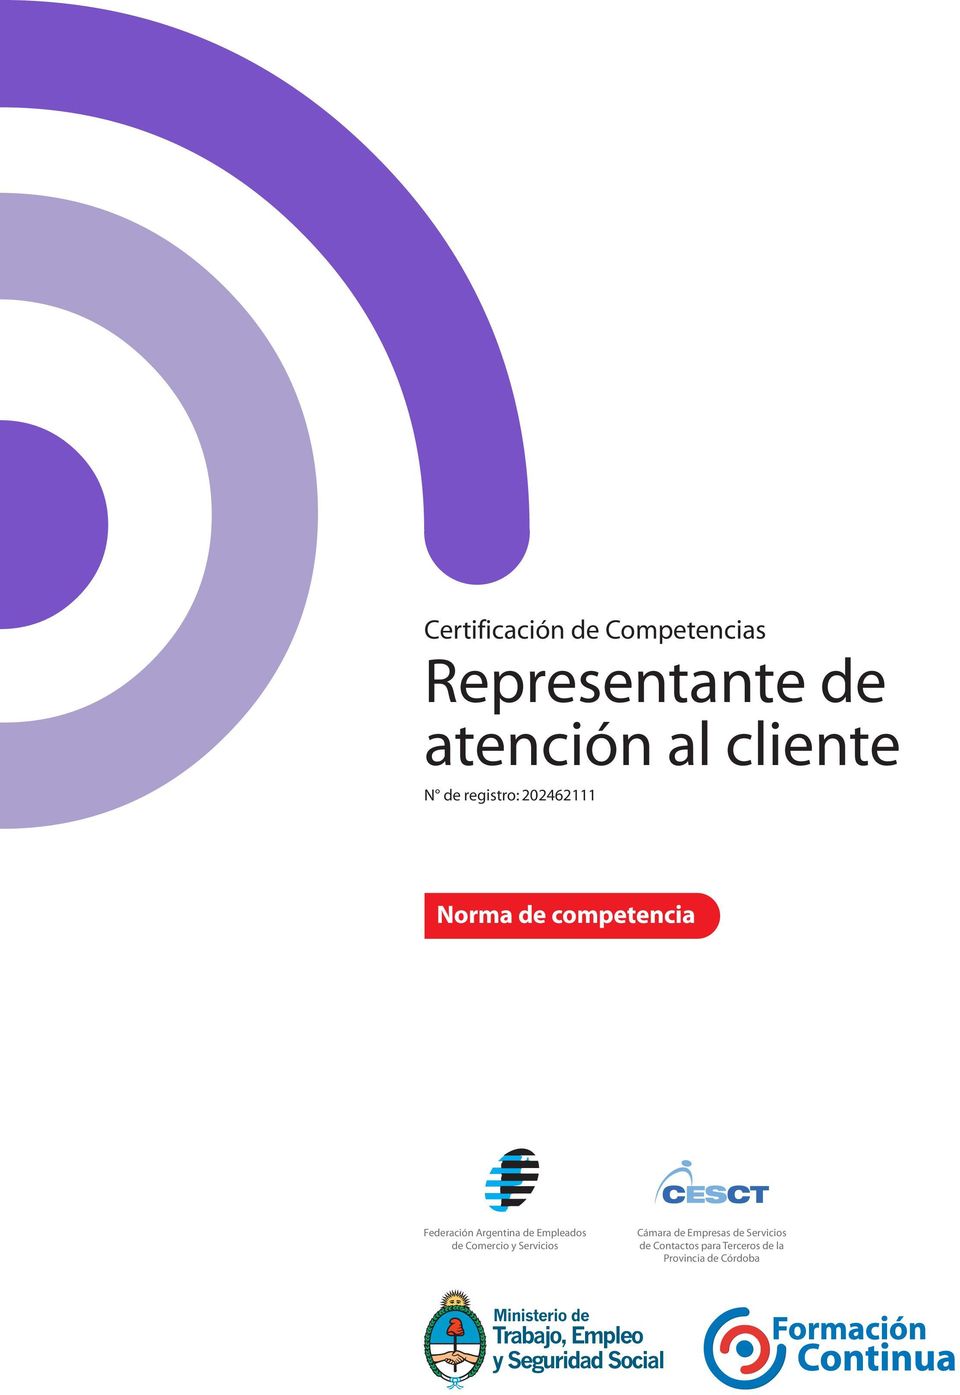 Federación Argentina de Empleados de Comercio y Servicios